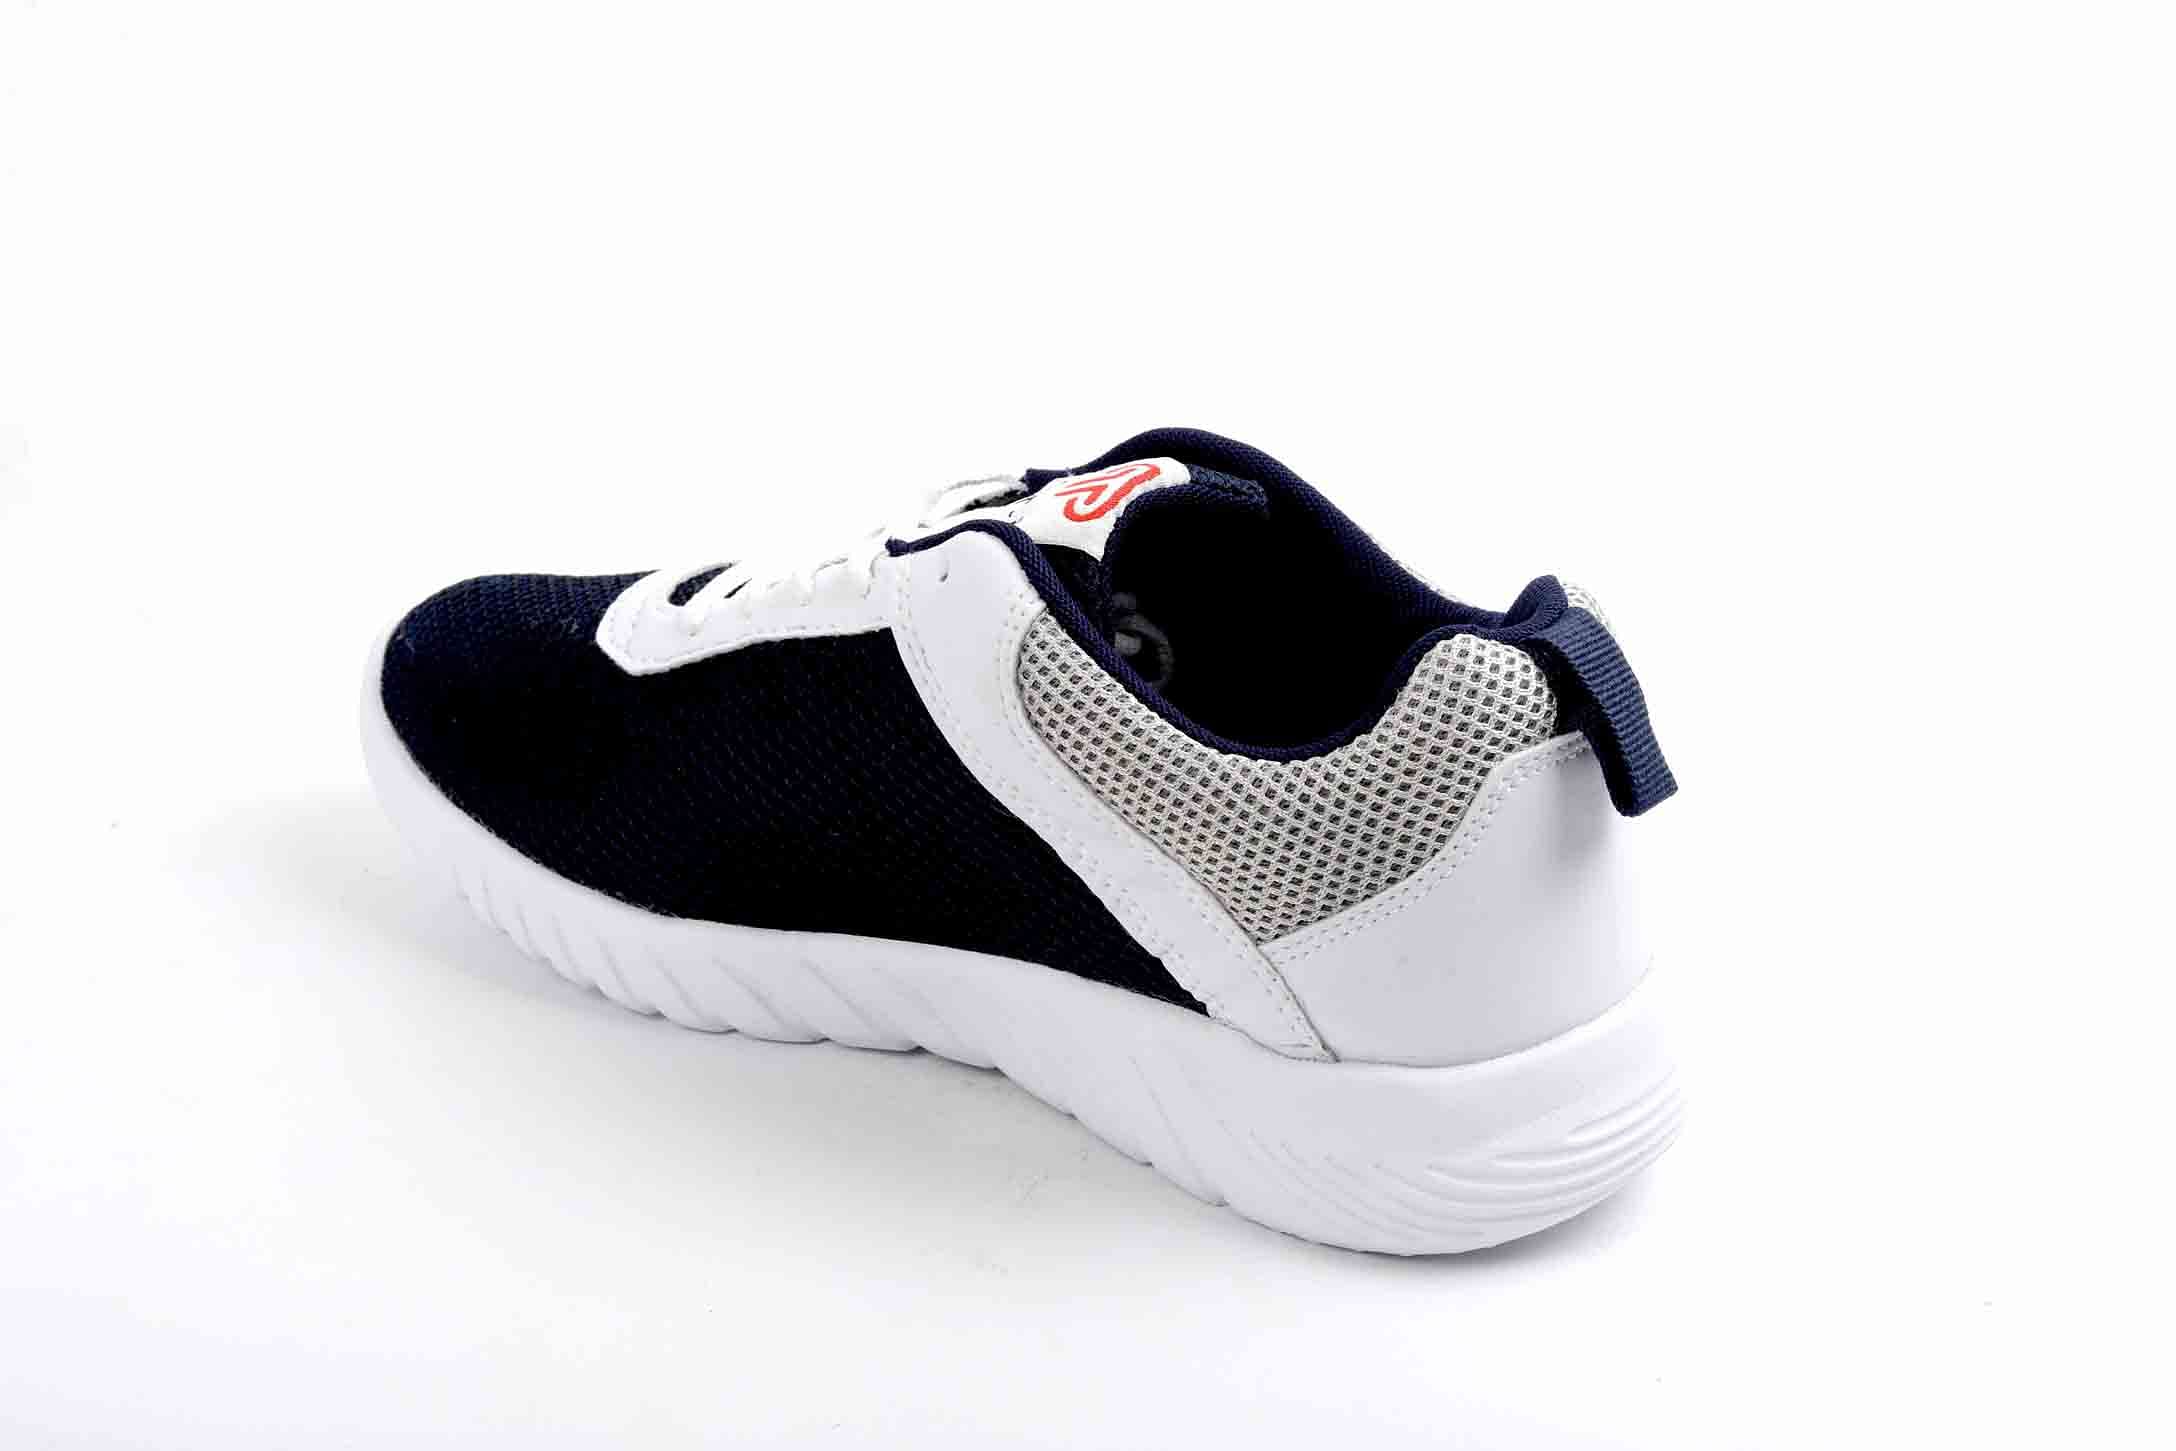 Pair-it Men's Sports Shoes - Blue - LZ-Presto099